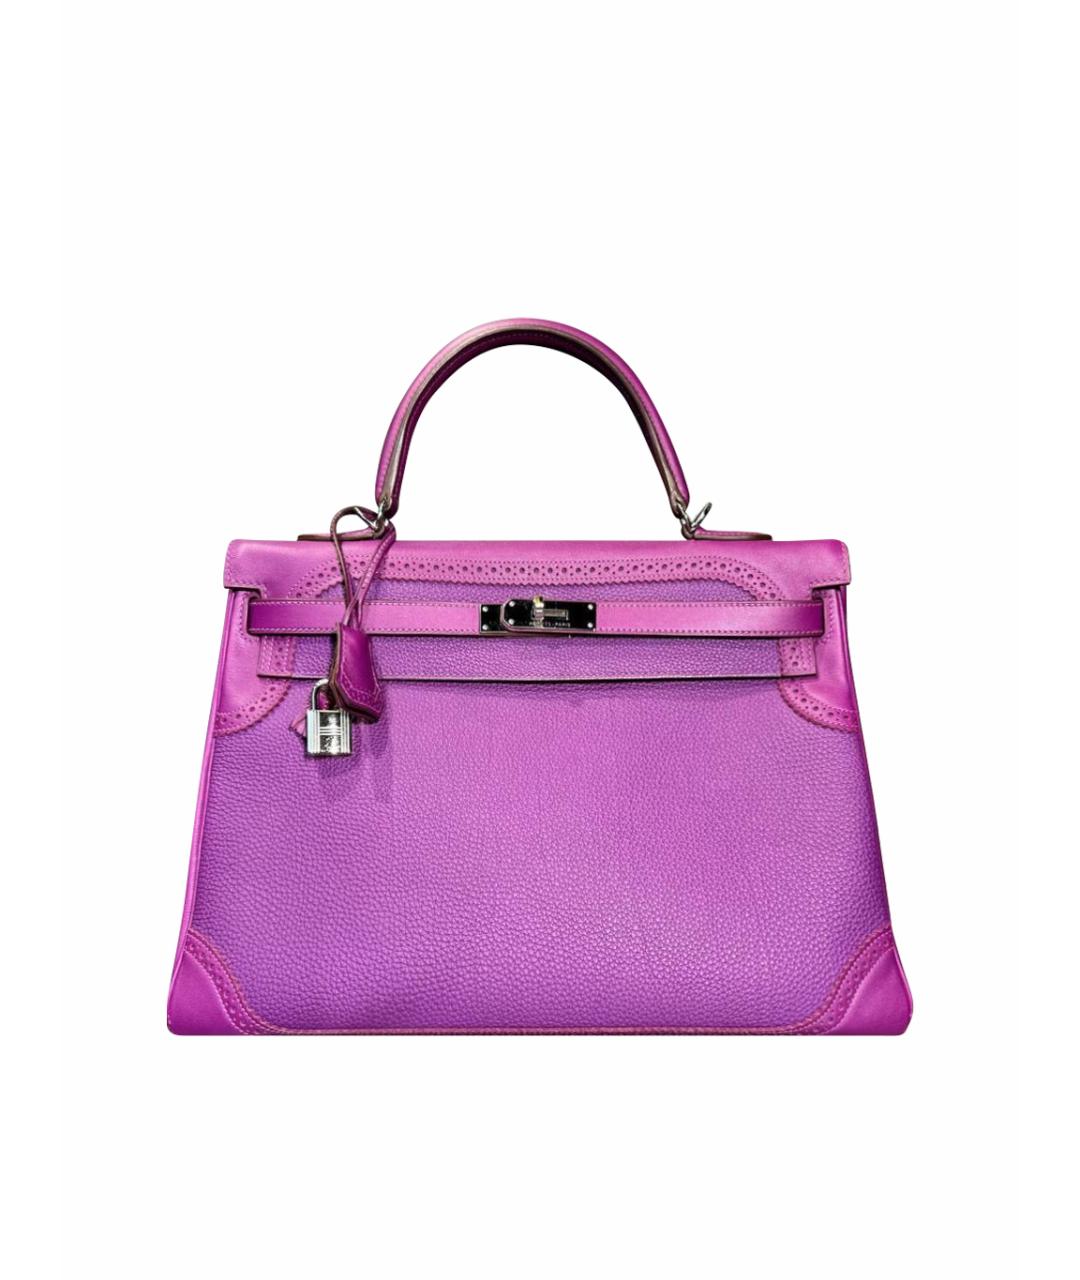 HERMES Фиолетовая кожаная сумка с короткими ручками, фото 1